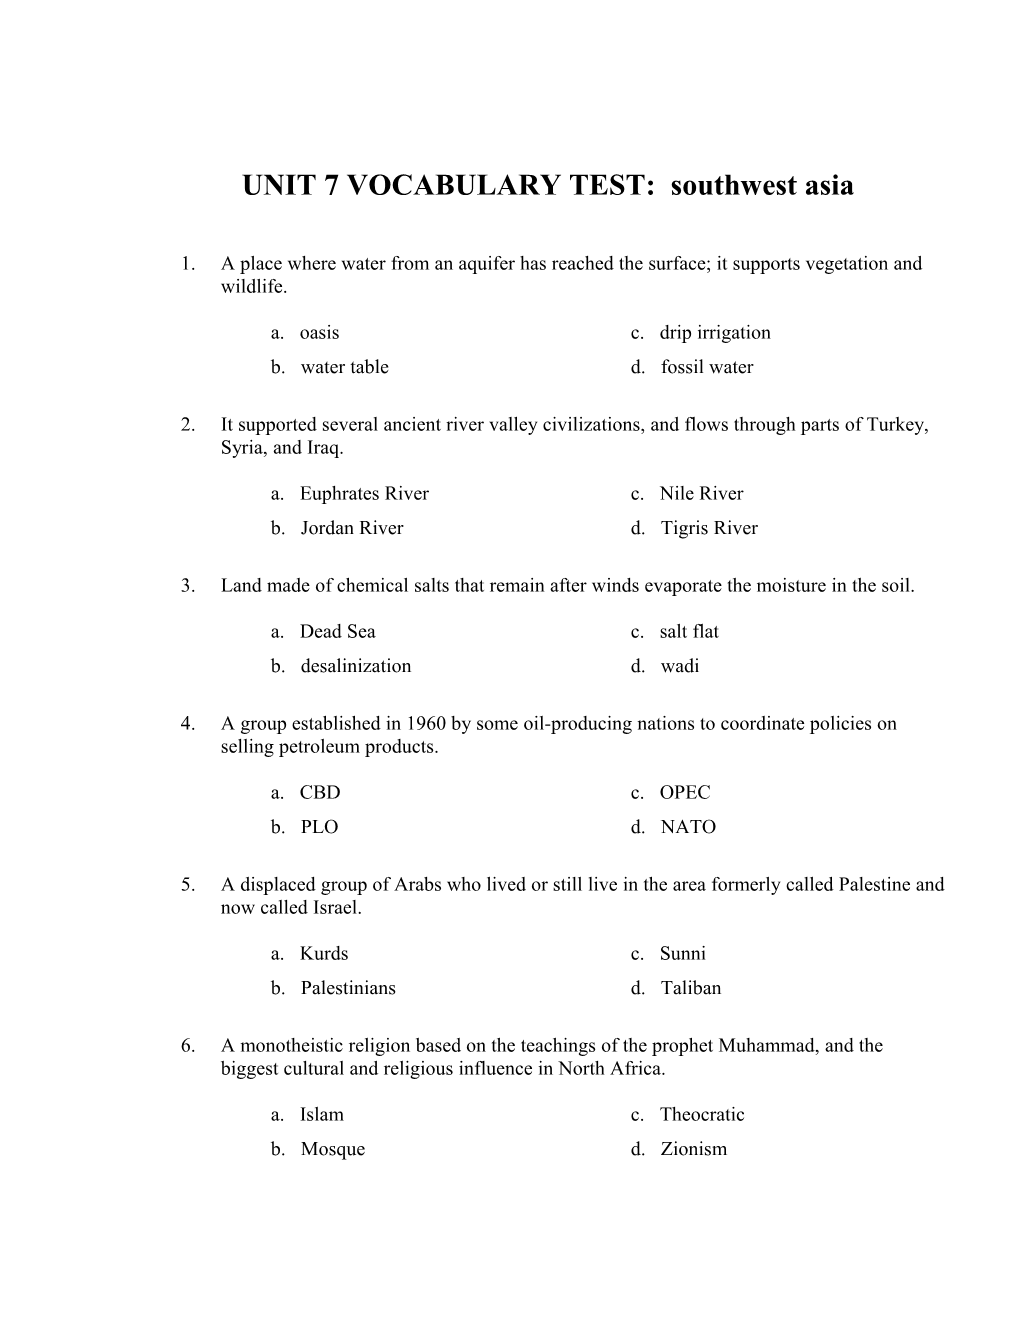 UNIT 7 VOCABULARY TEST: Southwest Asia